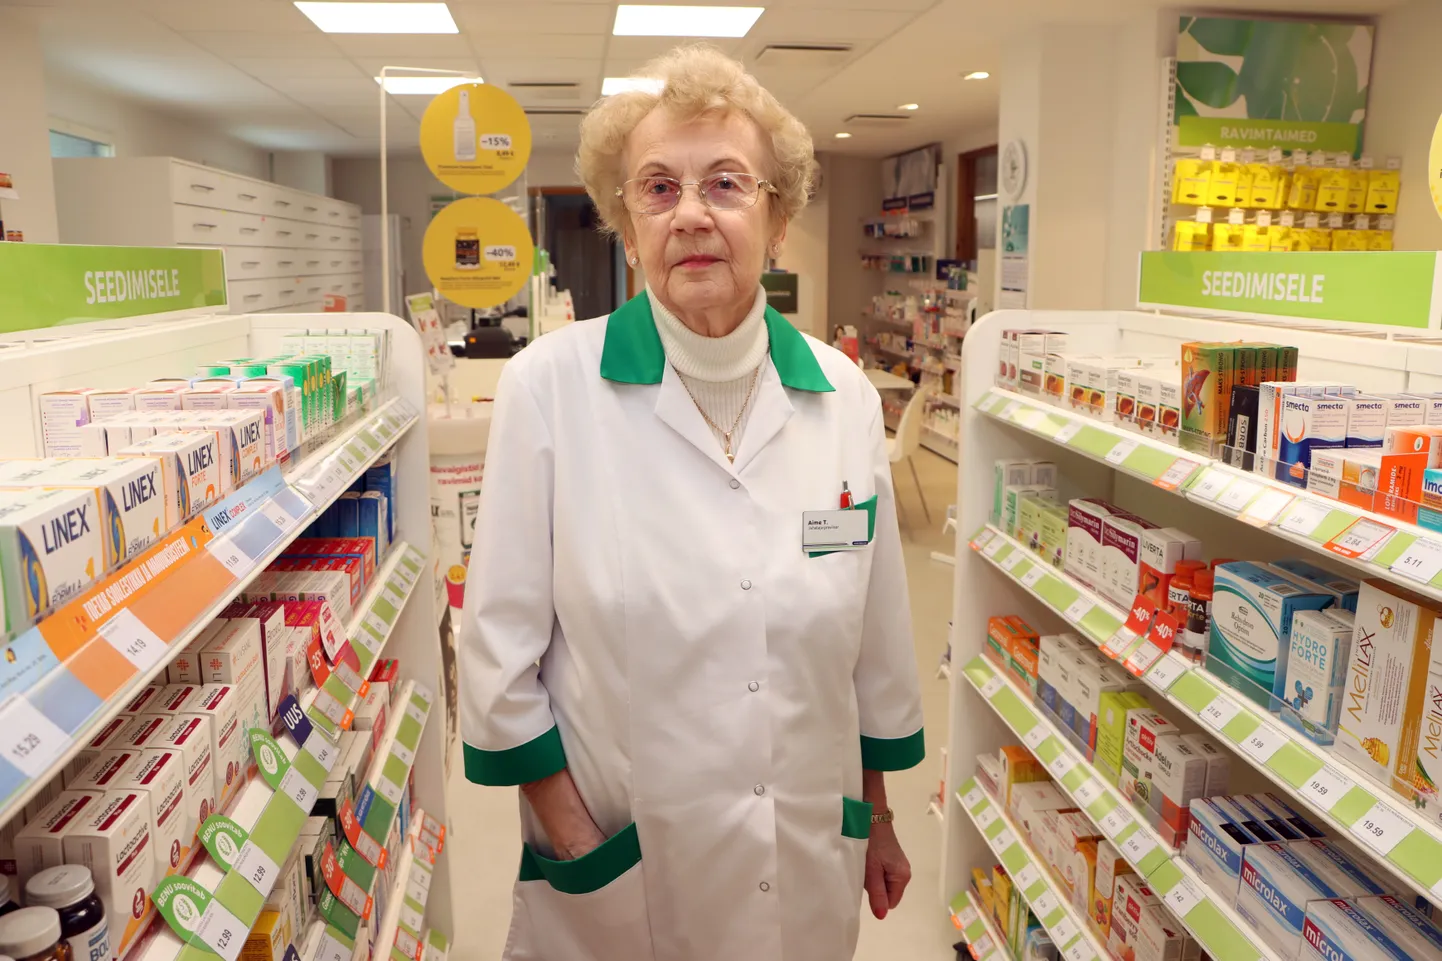 Когда Айме Толга два с половиной года назад сказали, что ей придется снова стать заведующей аптекой, она сочла это первоапрельской шуткой. Однако эту должность в аптеке "Benu" Айме Толга занимает по сей день.